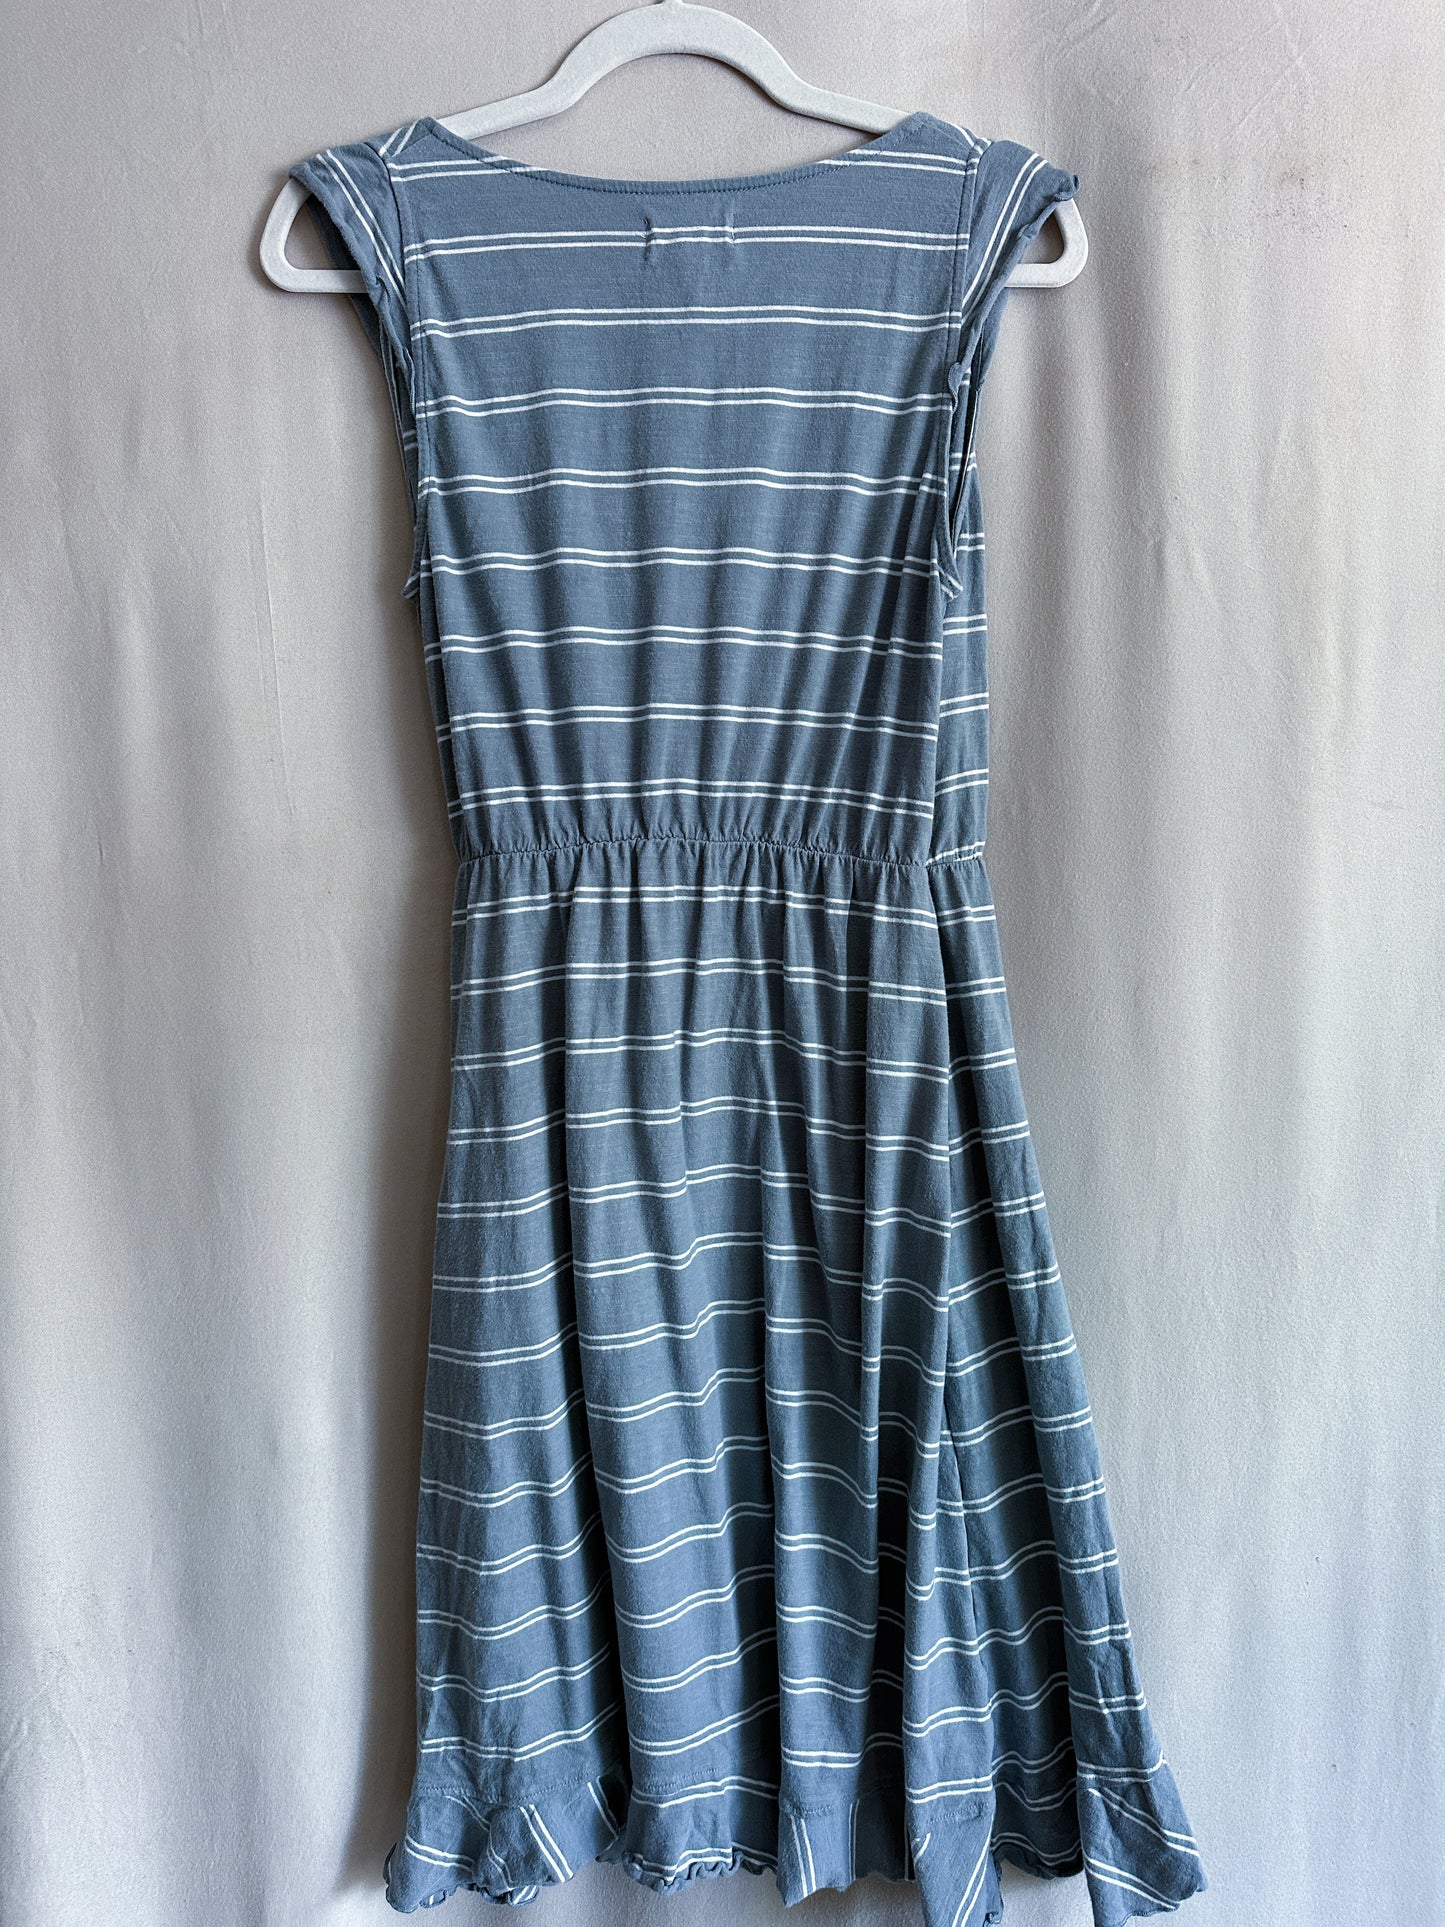 Pact Gray Striped Faux Wrap Dress (size M)